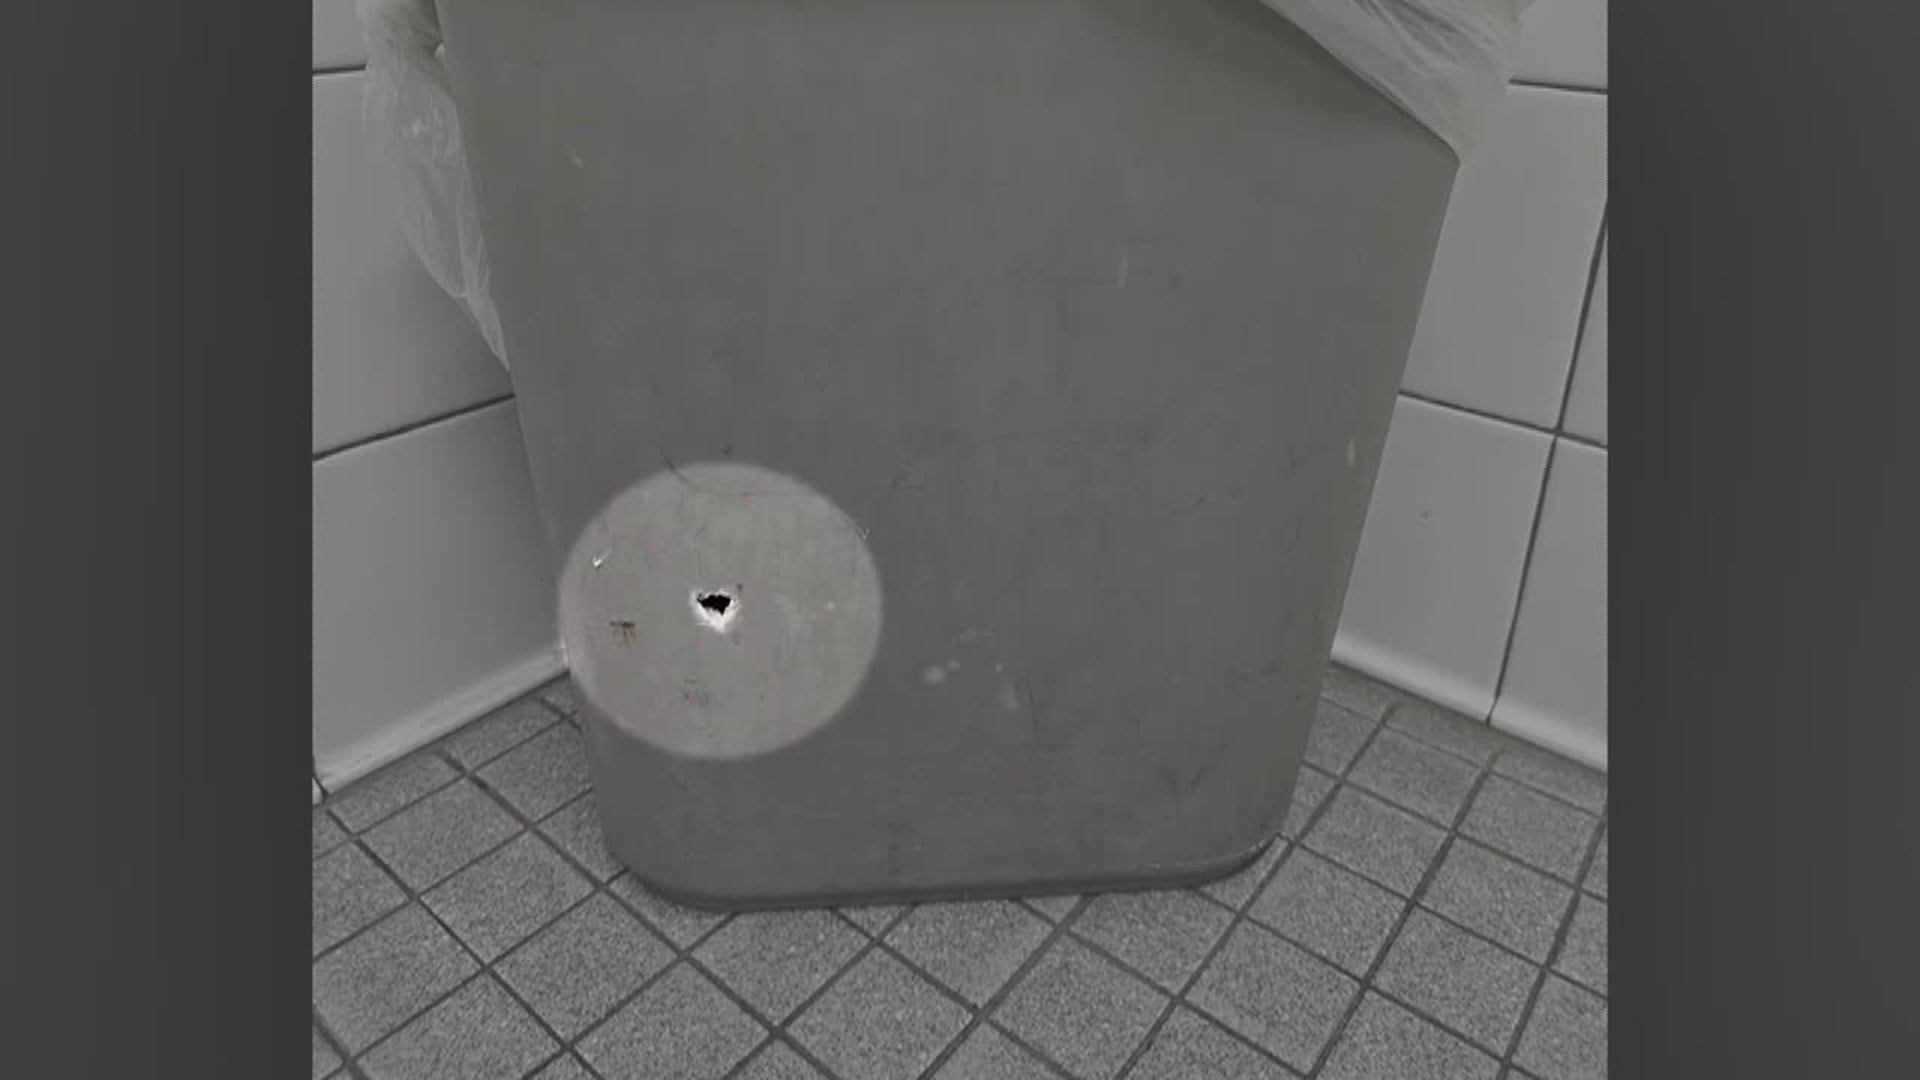 danielle alchin recommends hidden camera in public bathroom pic